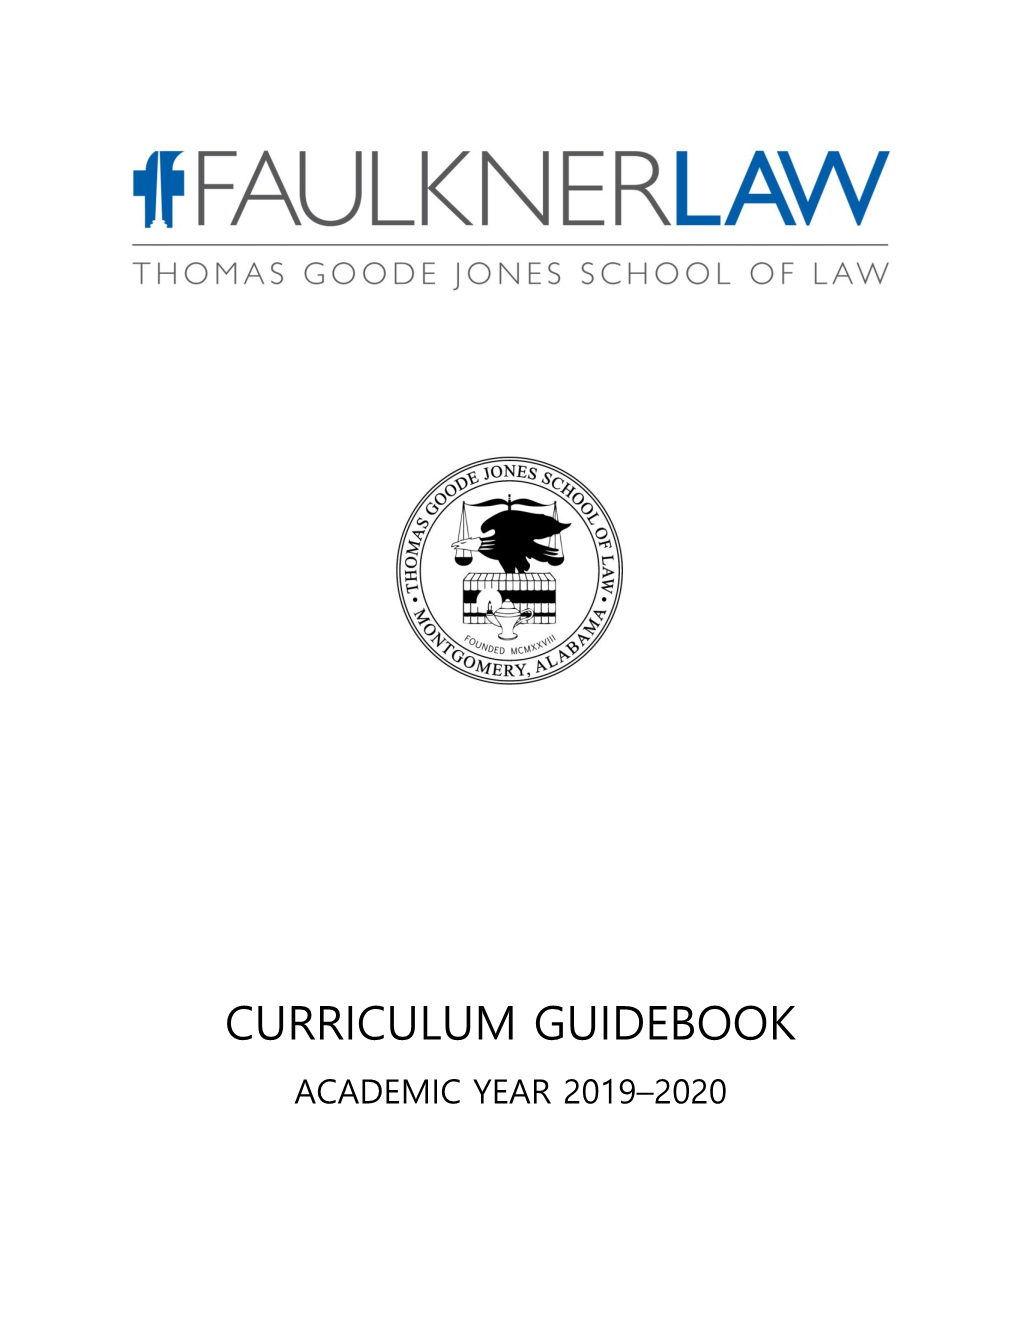 2019-2020 Curriculum Guidebook